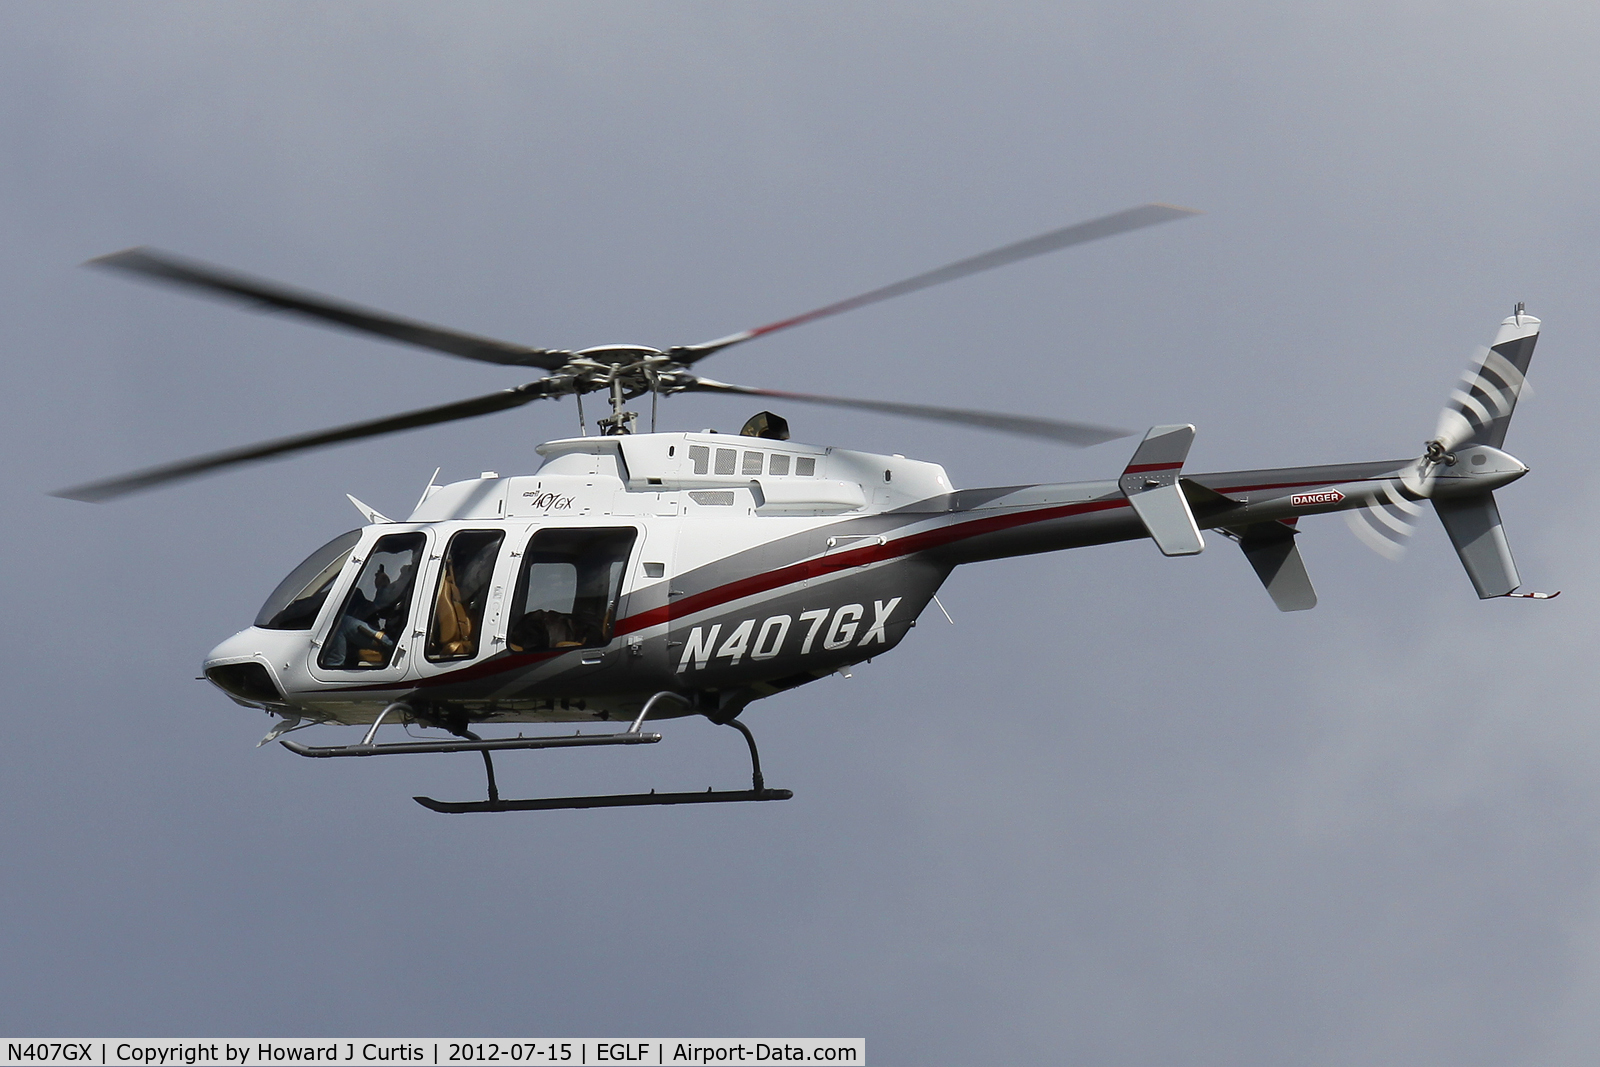 N407GX, 2010 Bell 407 C/N 54300, At the Farnborough Air Show.